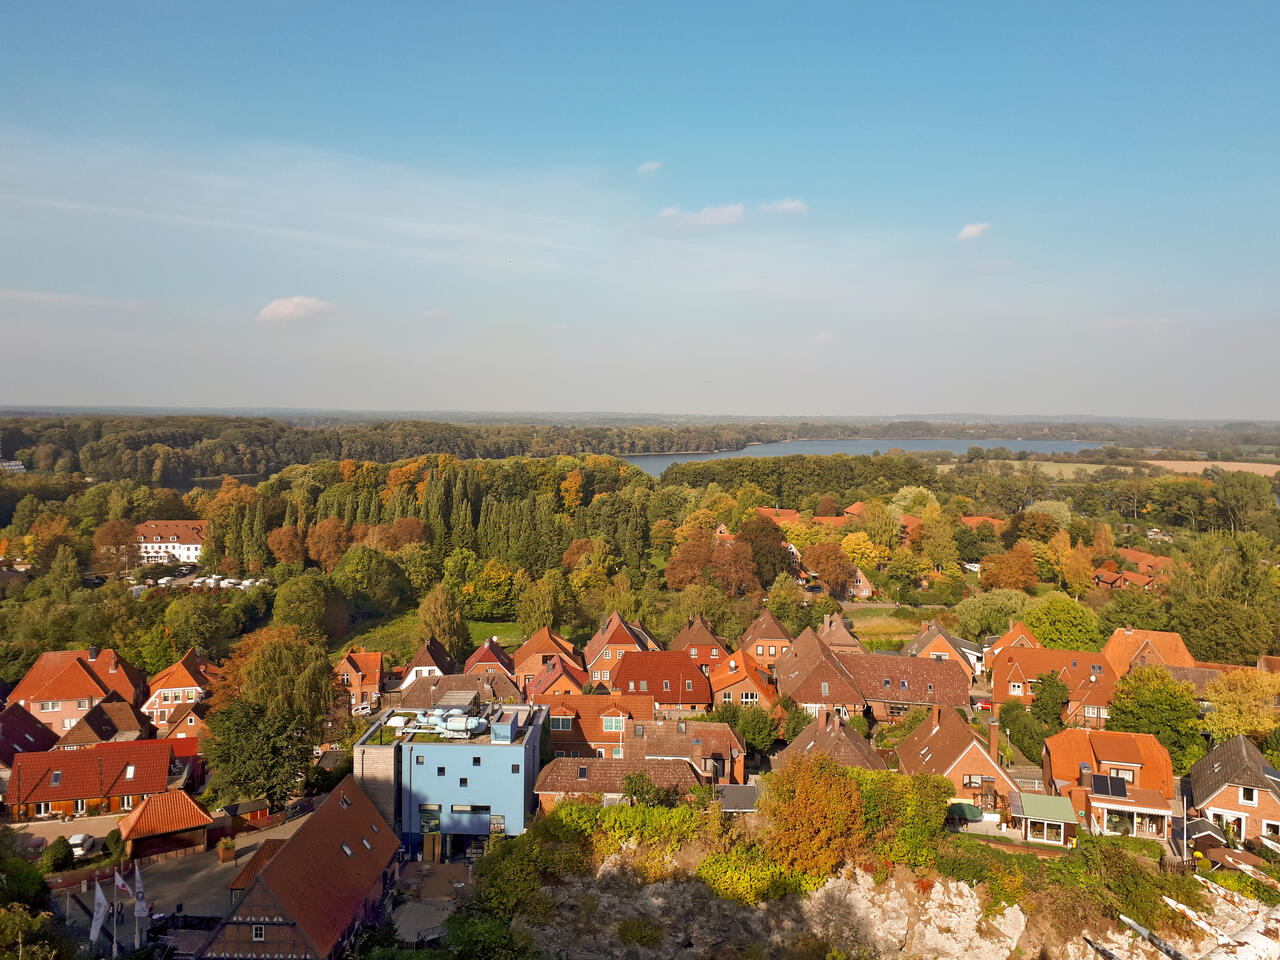 Bild vergrößern: Blick vom Kalkberg auf die Altstadt von Bad Segeberg. Im Hintergrund ist der Große Segeberger See zu sehen.